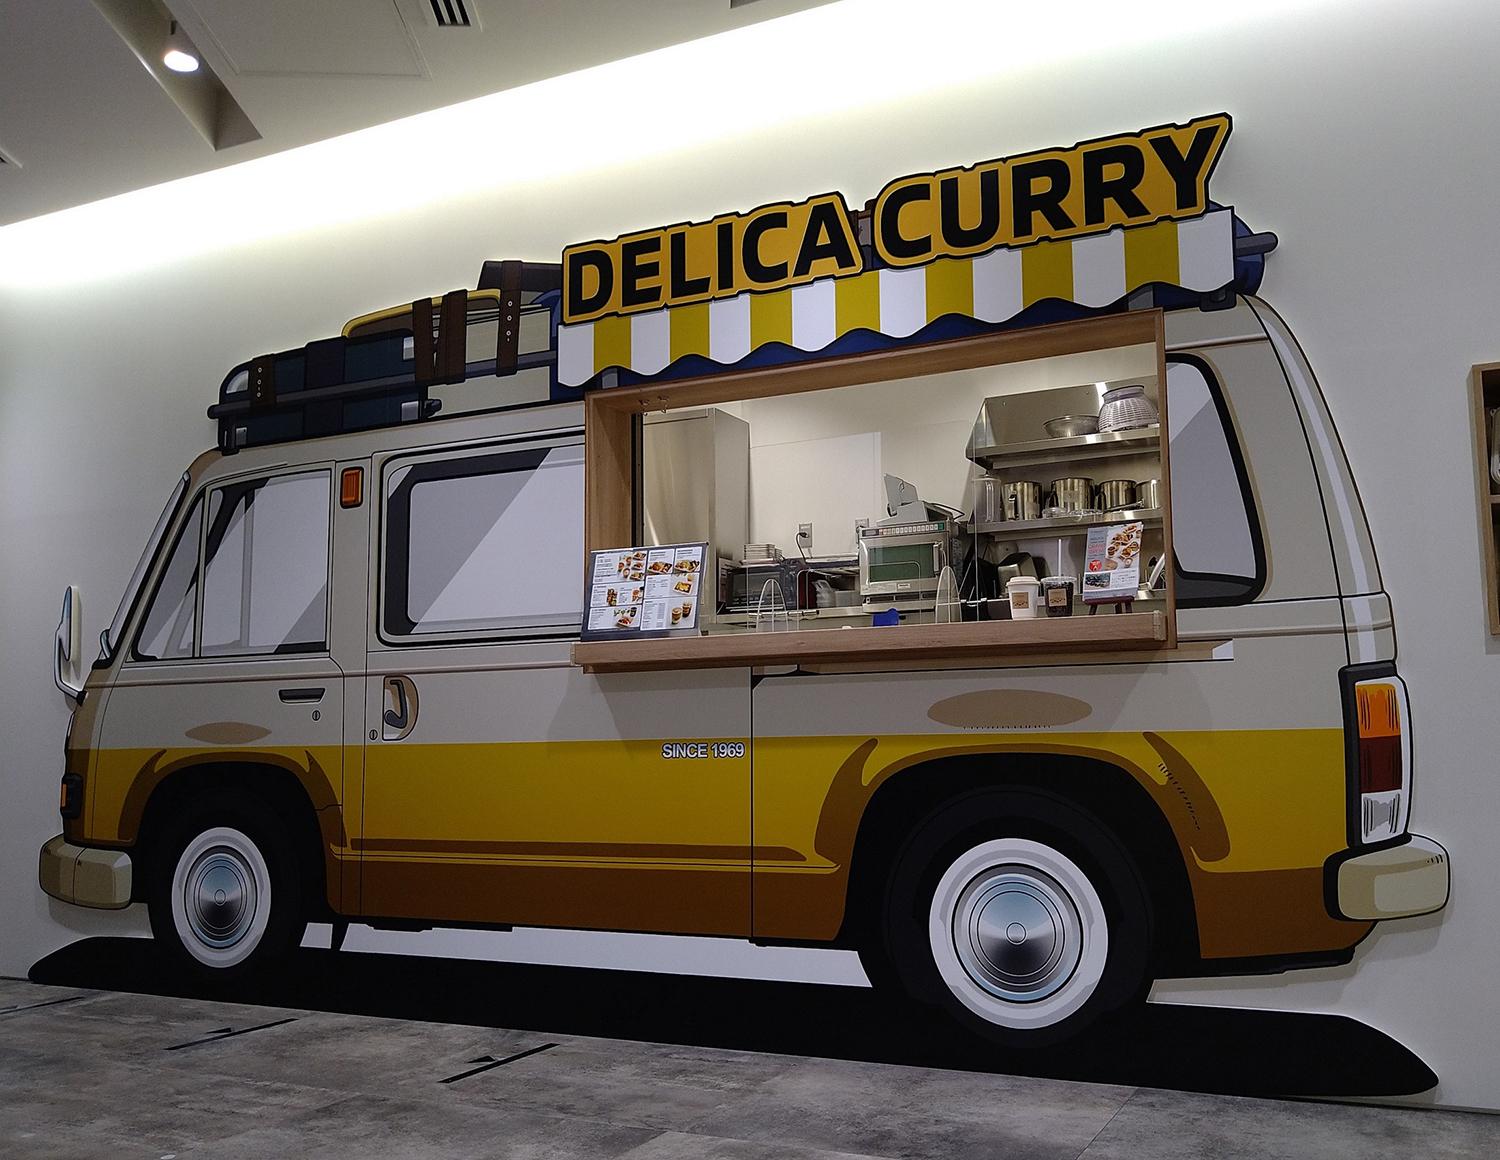 初代「デリカコーチ」のキッチンカーをイメージした外観のカレーショップ「DELICA CURRY」 〜 画像3